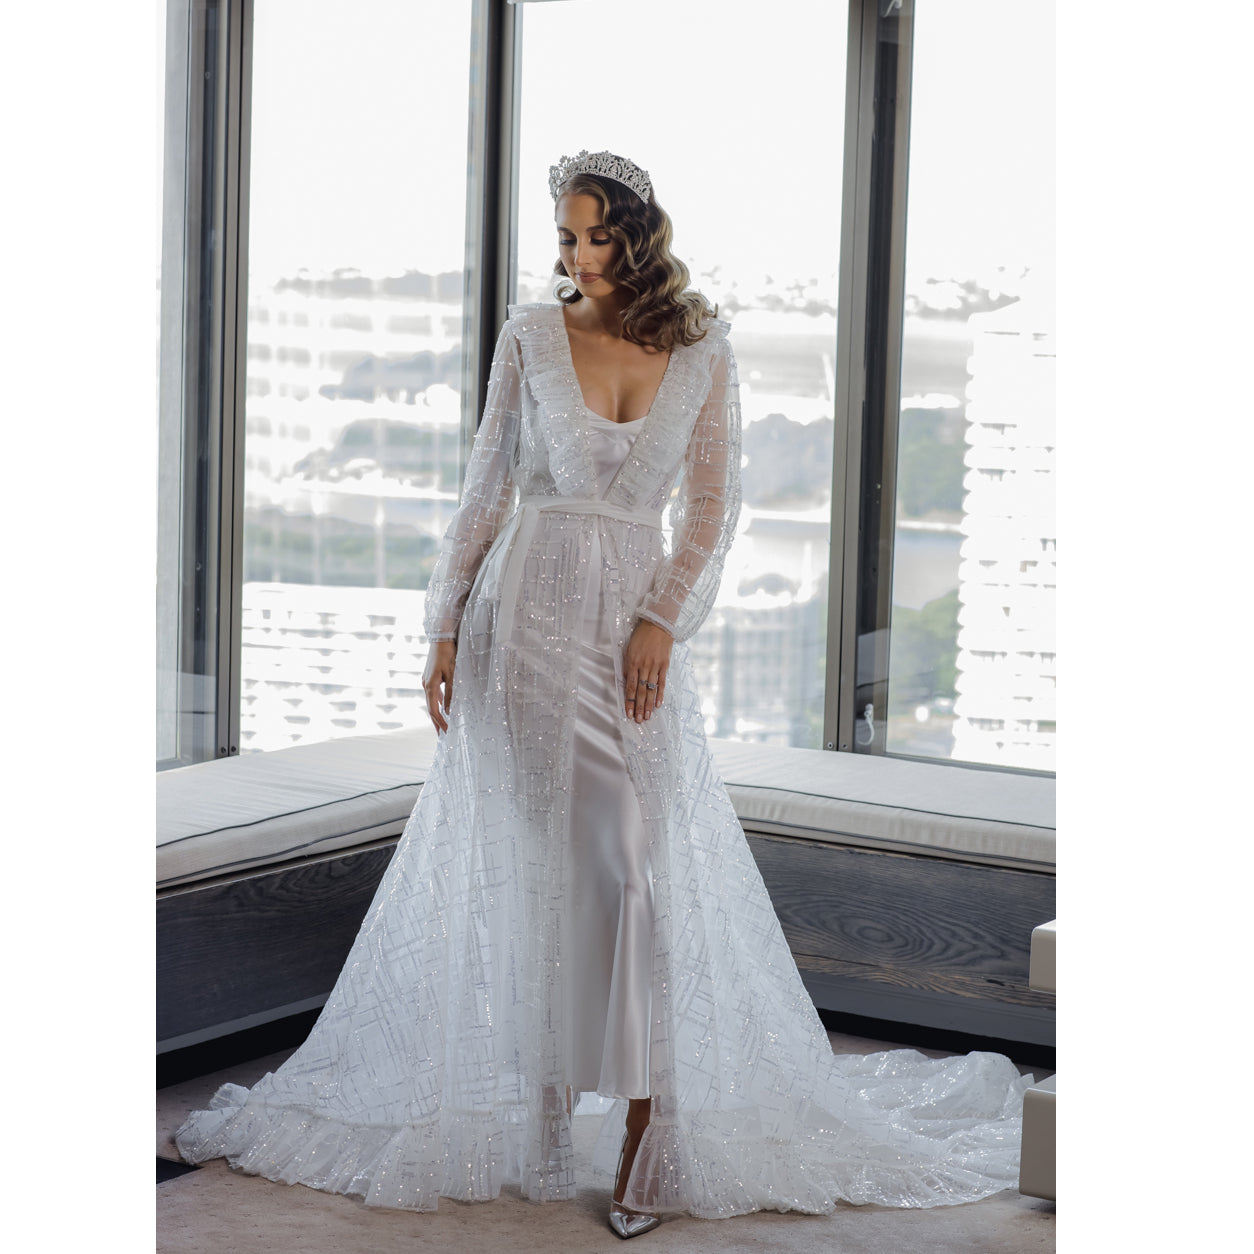 Belle Bridal Luxury Robe Bridal Lingerie - Robe    